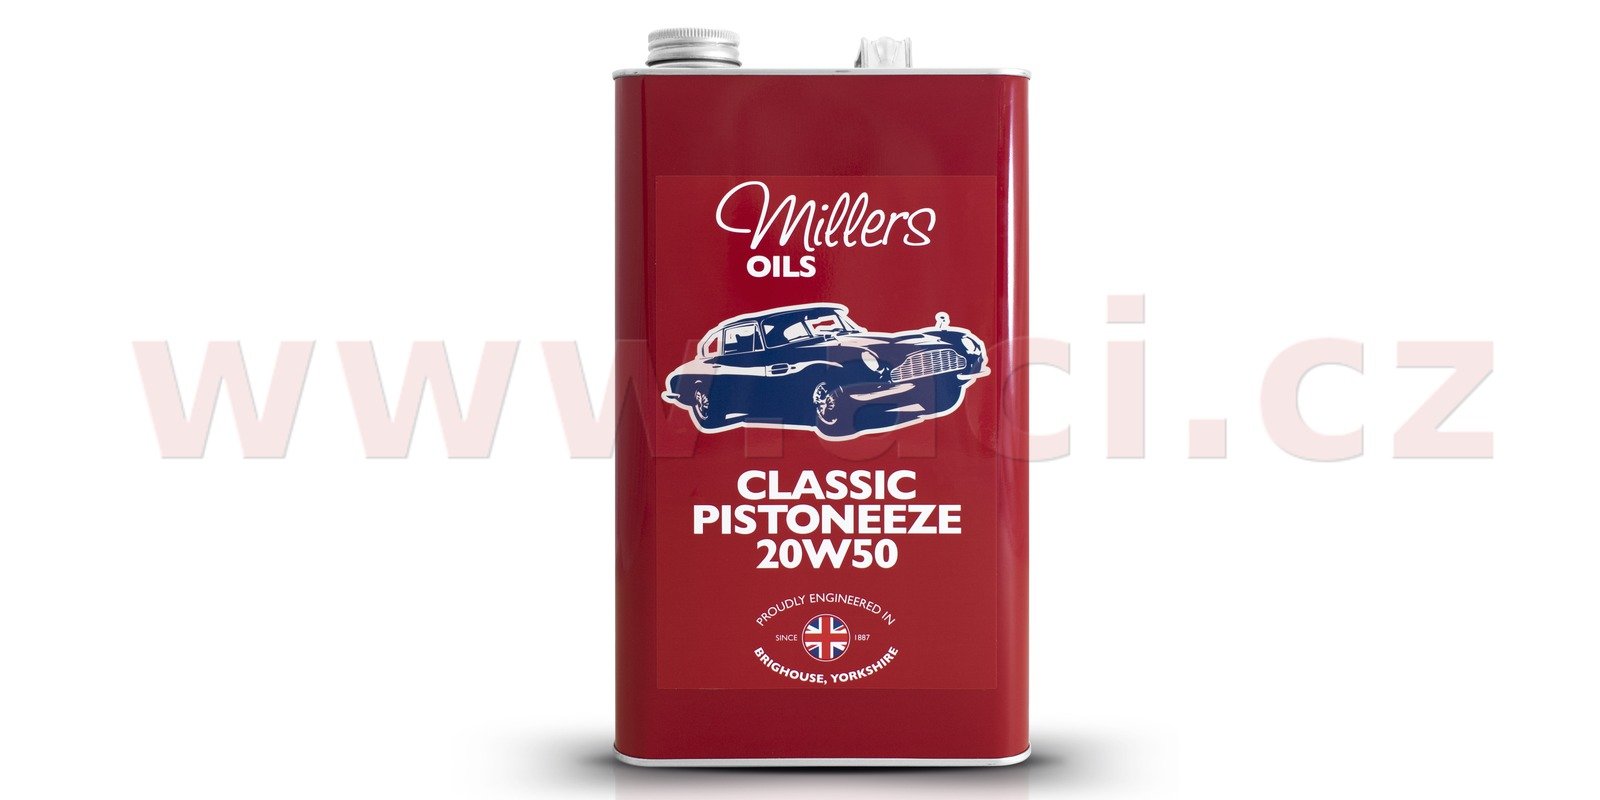 Obrázek produktu MILLERS OILS Classic Pistoneeze 20W50, motorový minerální olej (v plechovém retro obalu) 5 l 79135